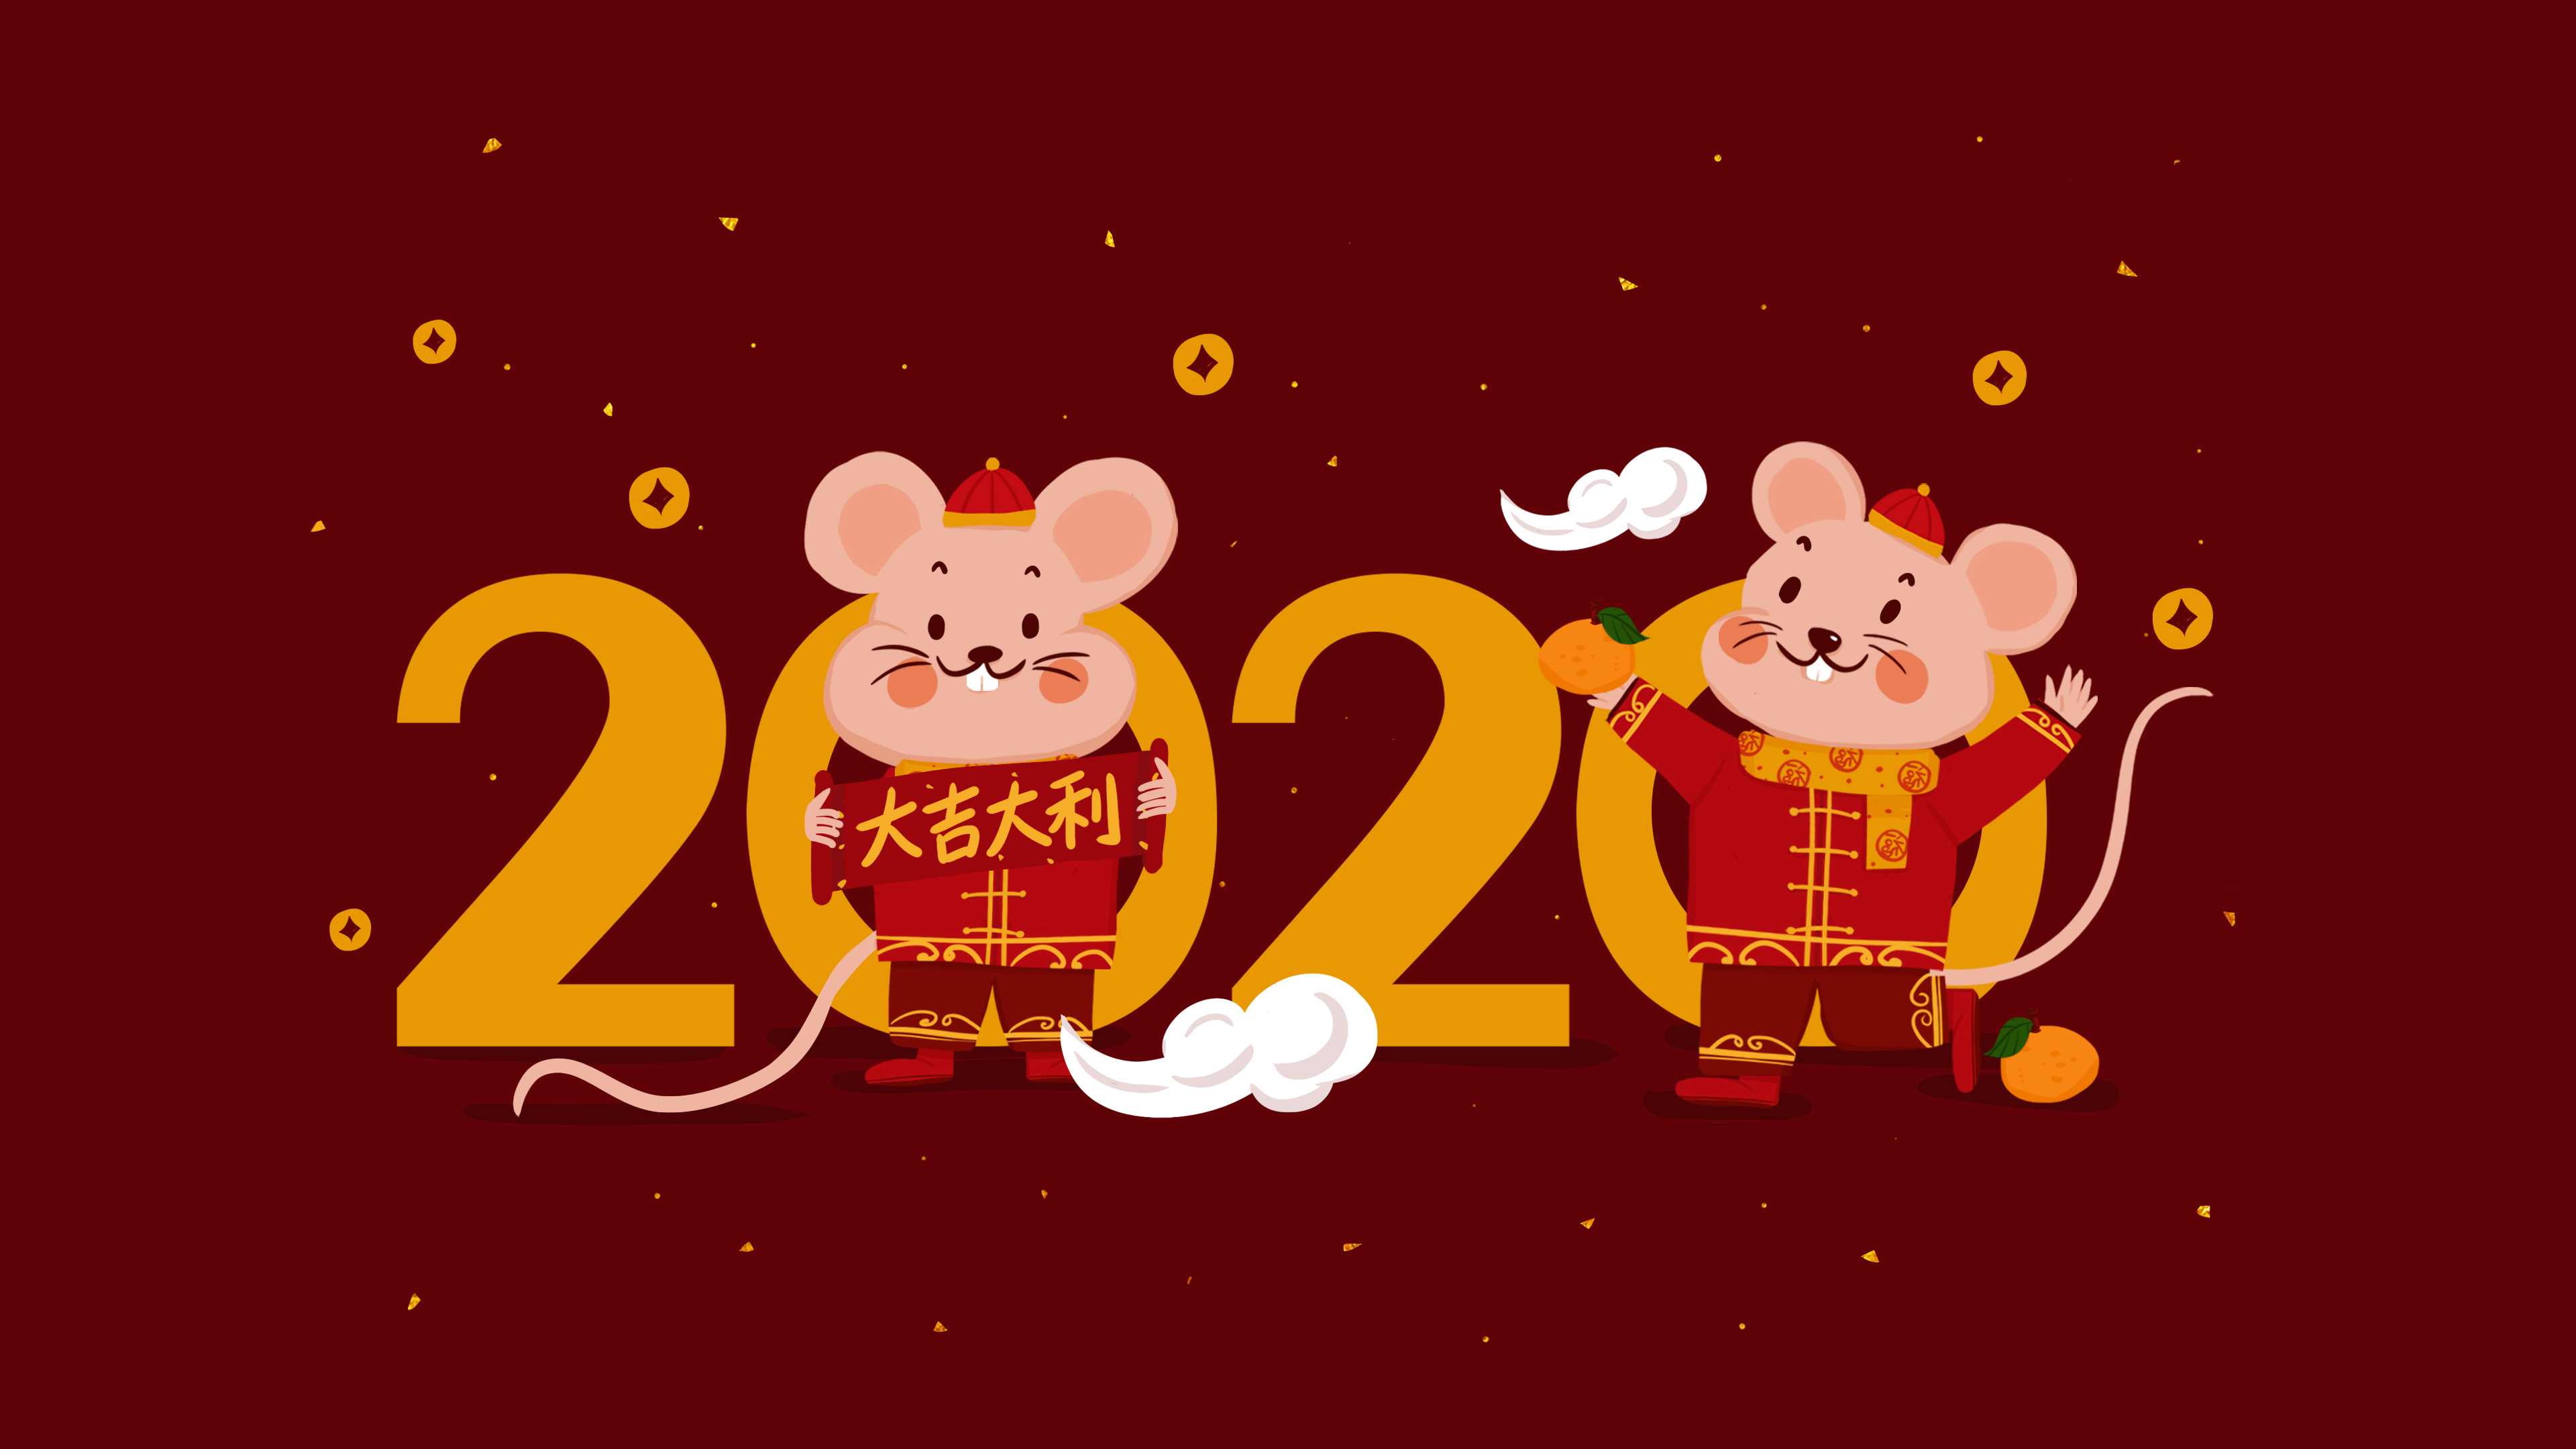 2020图片_鼠年壁纸下载_新年快乐高清图片壁纸